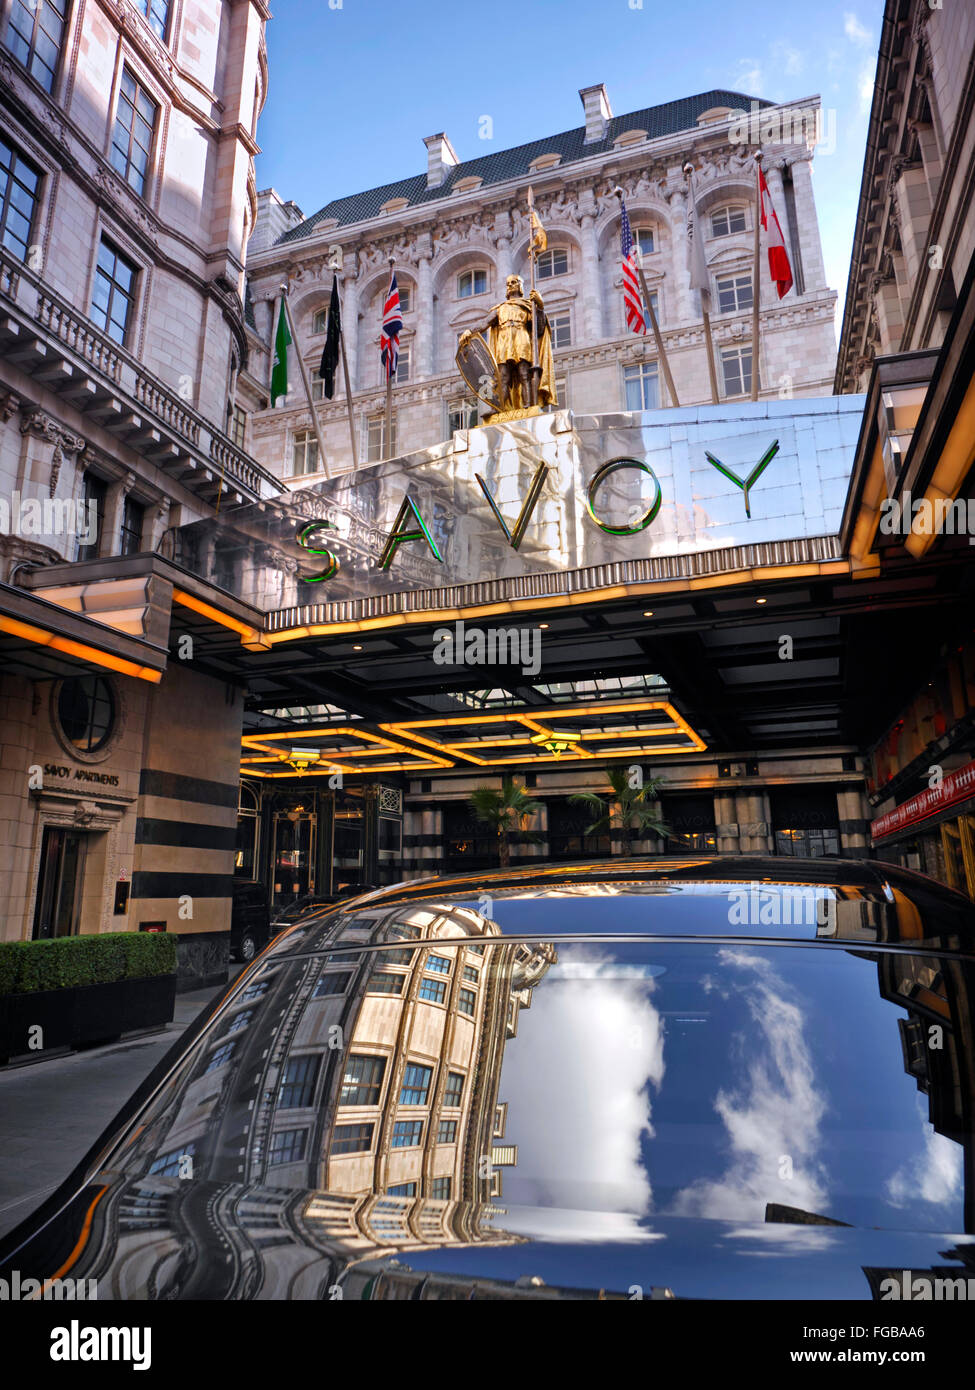 SAVOY HOTEL Außenansicht des luxuriösen fünf-Sterne-Hotels Savoy Hotel Eingangsfoyers mit Himmelsspiegelung im Rolls Royce Motorwagen The Strand London WC2 Stockfoto